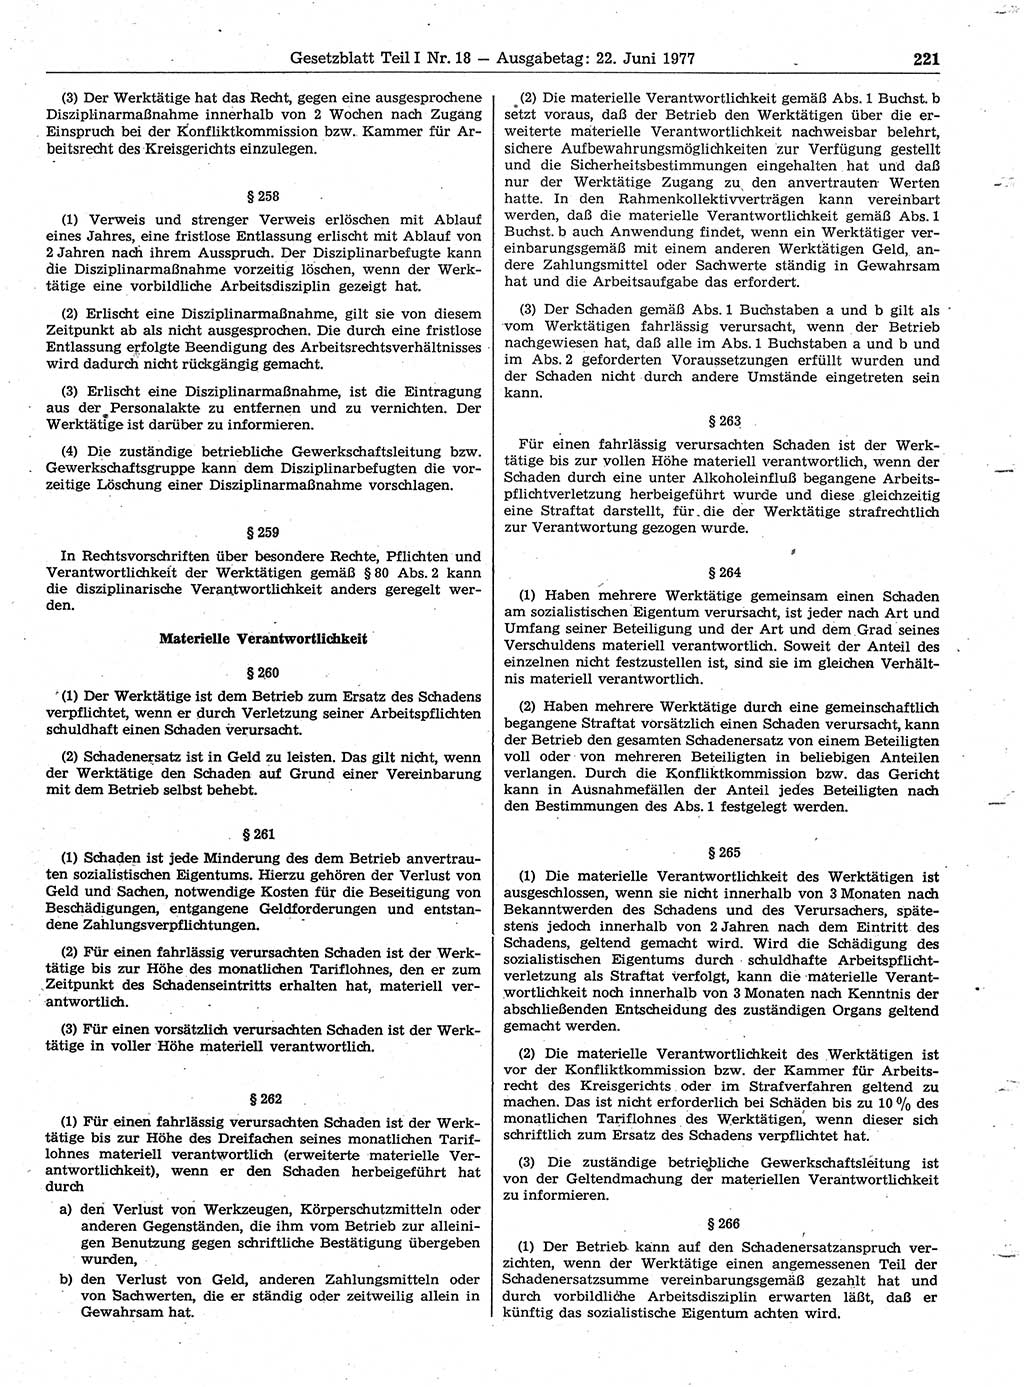 Gesetzblatt (GBl.) der Deutschen Demokratischen Republik (DDR) Teil Ⅰ 1977, Seite 221 (GBl. DDR Ⅰ 1977, S. 221)